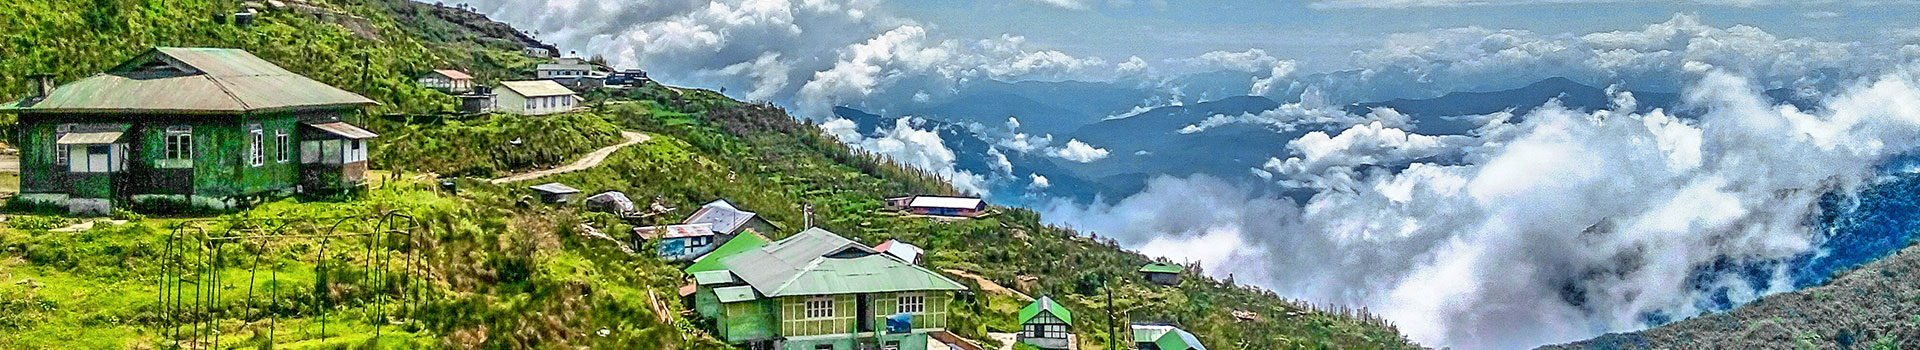 Splendor Of Sikkim And Darjeeling